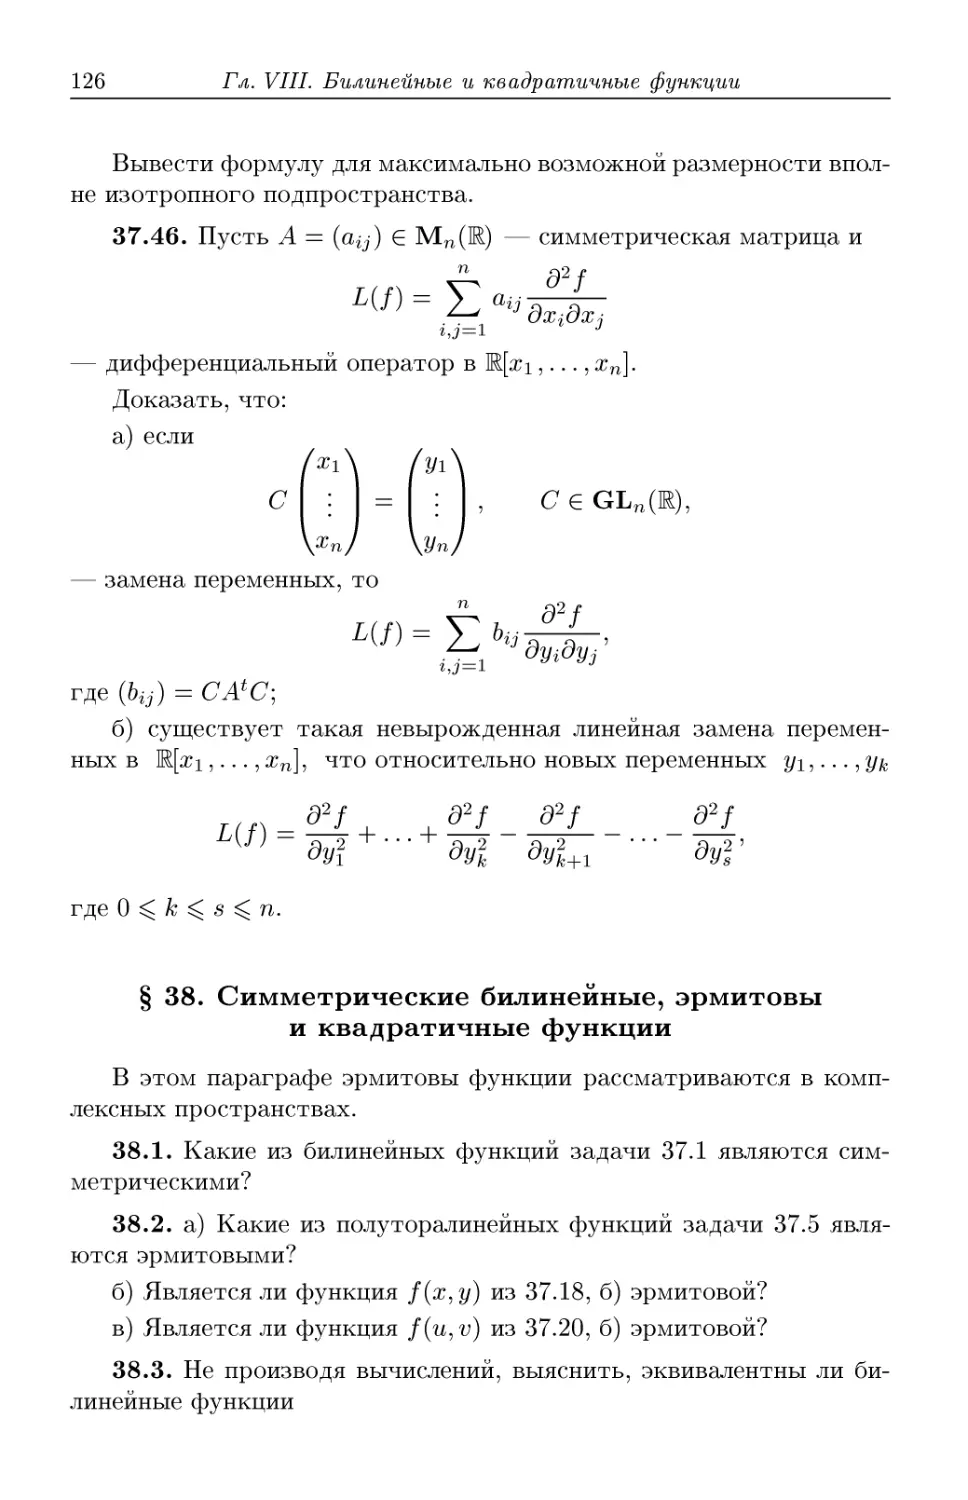 § 38. Симметрические билинейные, эрмитовы и квадратичные функции